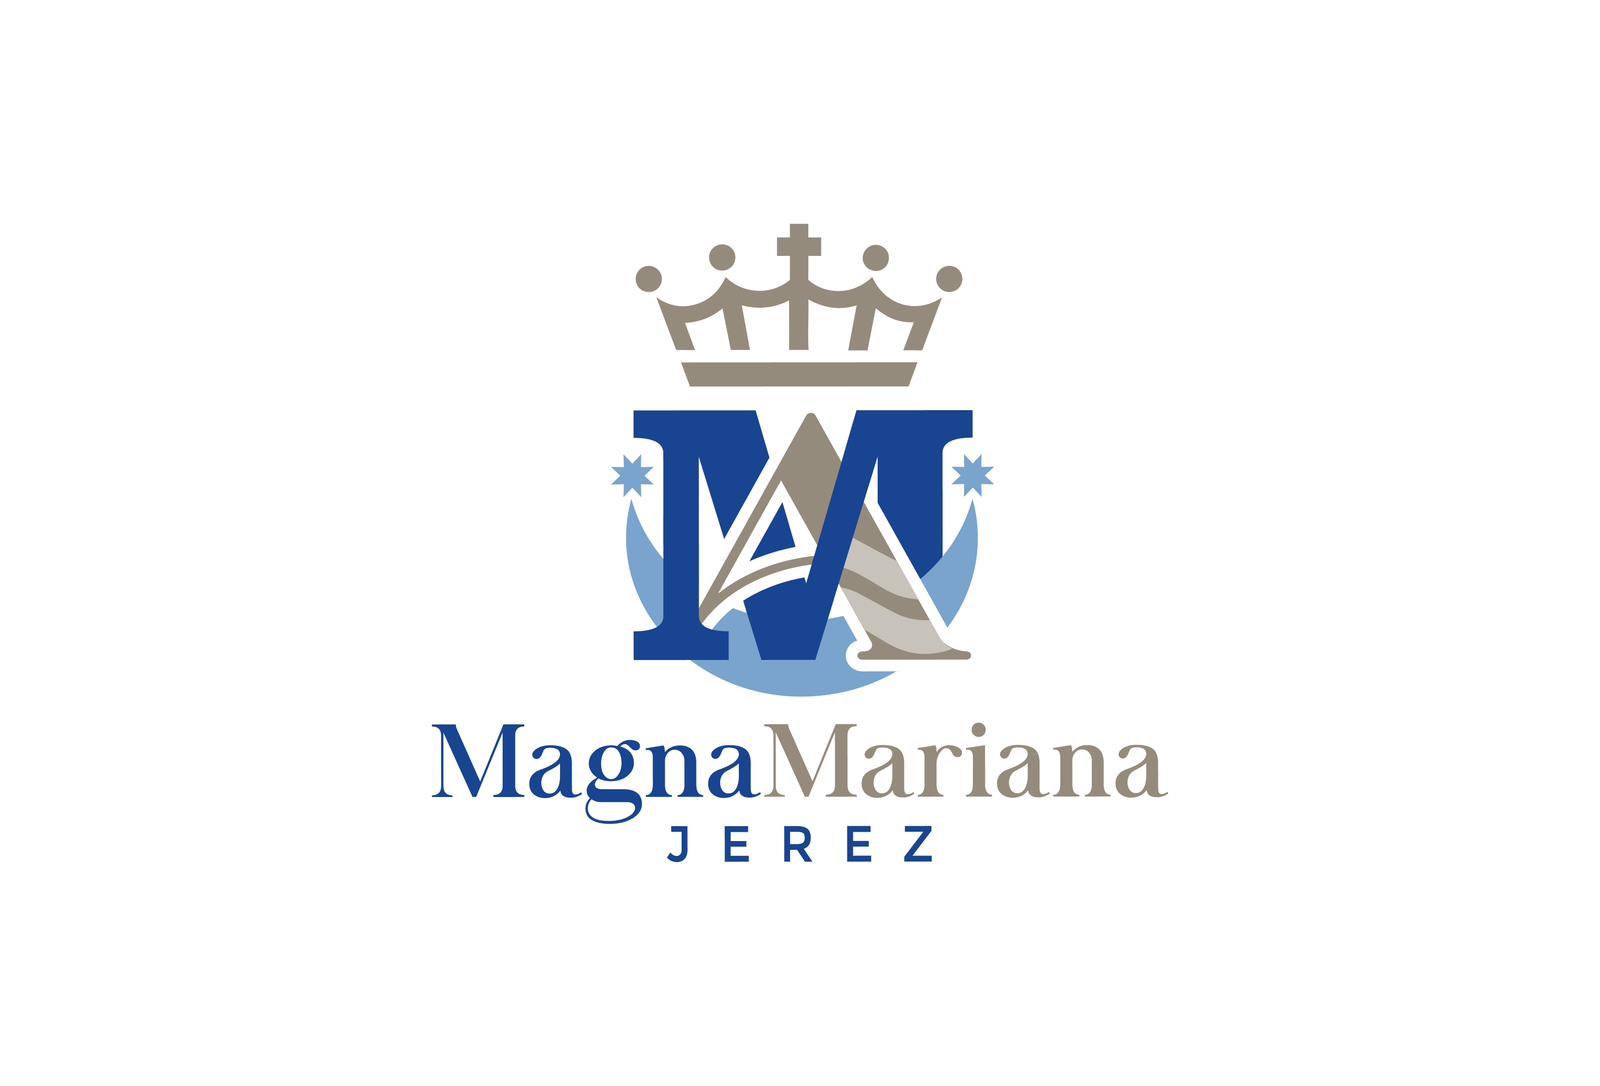 La Magna Mariana de Jerez ya tiene logotipo oficial